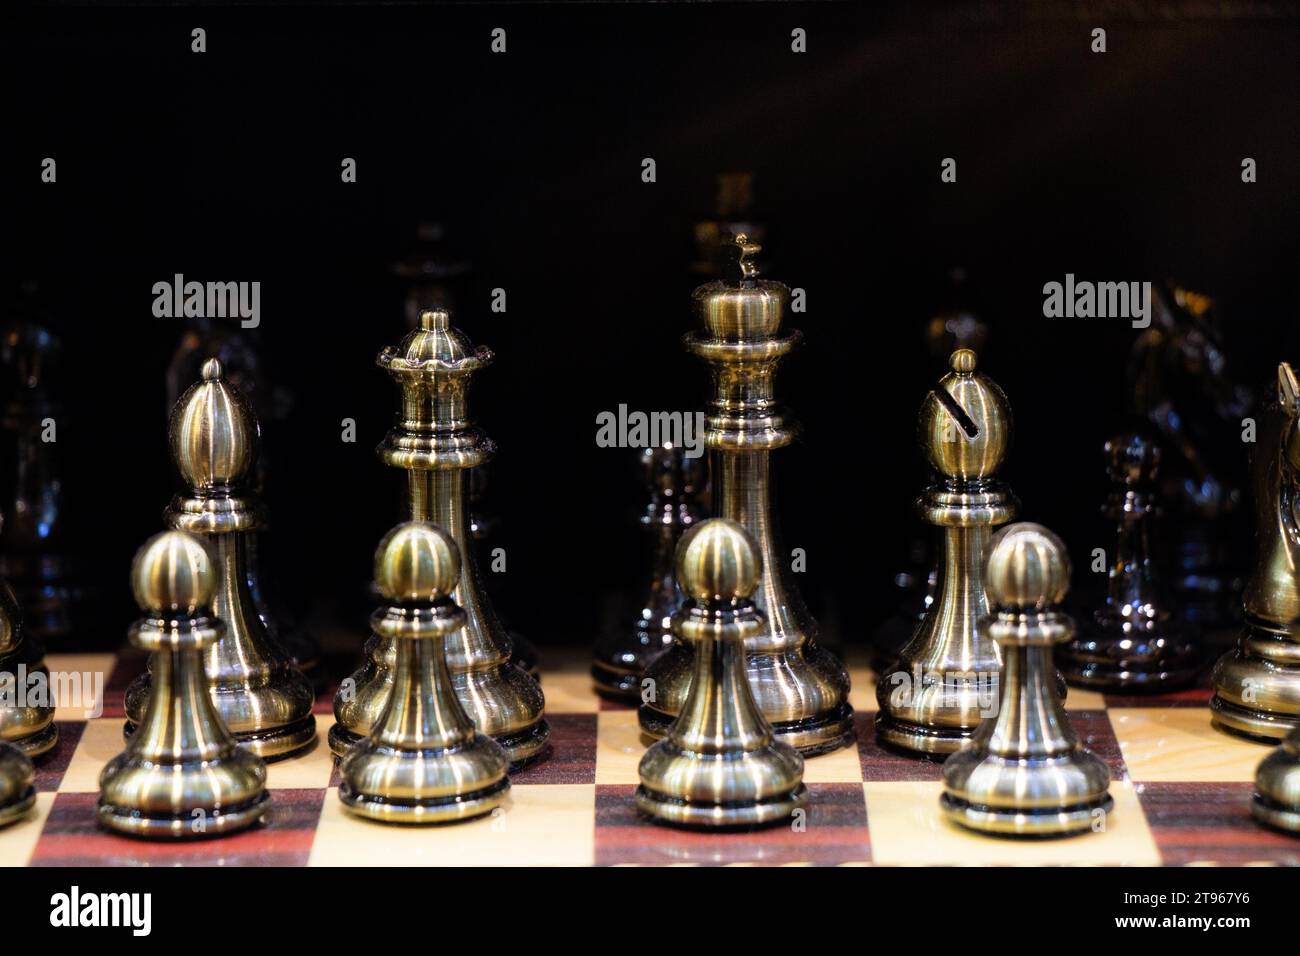 Jeu intellectuel - échecs. Pièces d'échecs en bois sur le chessboard Banque D'Images